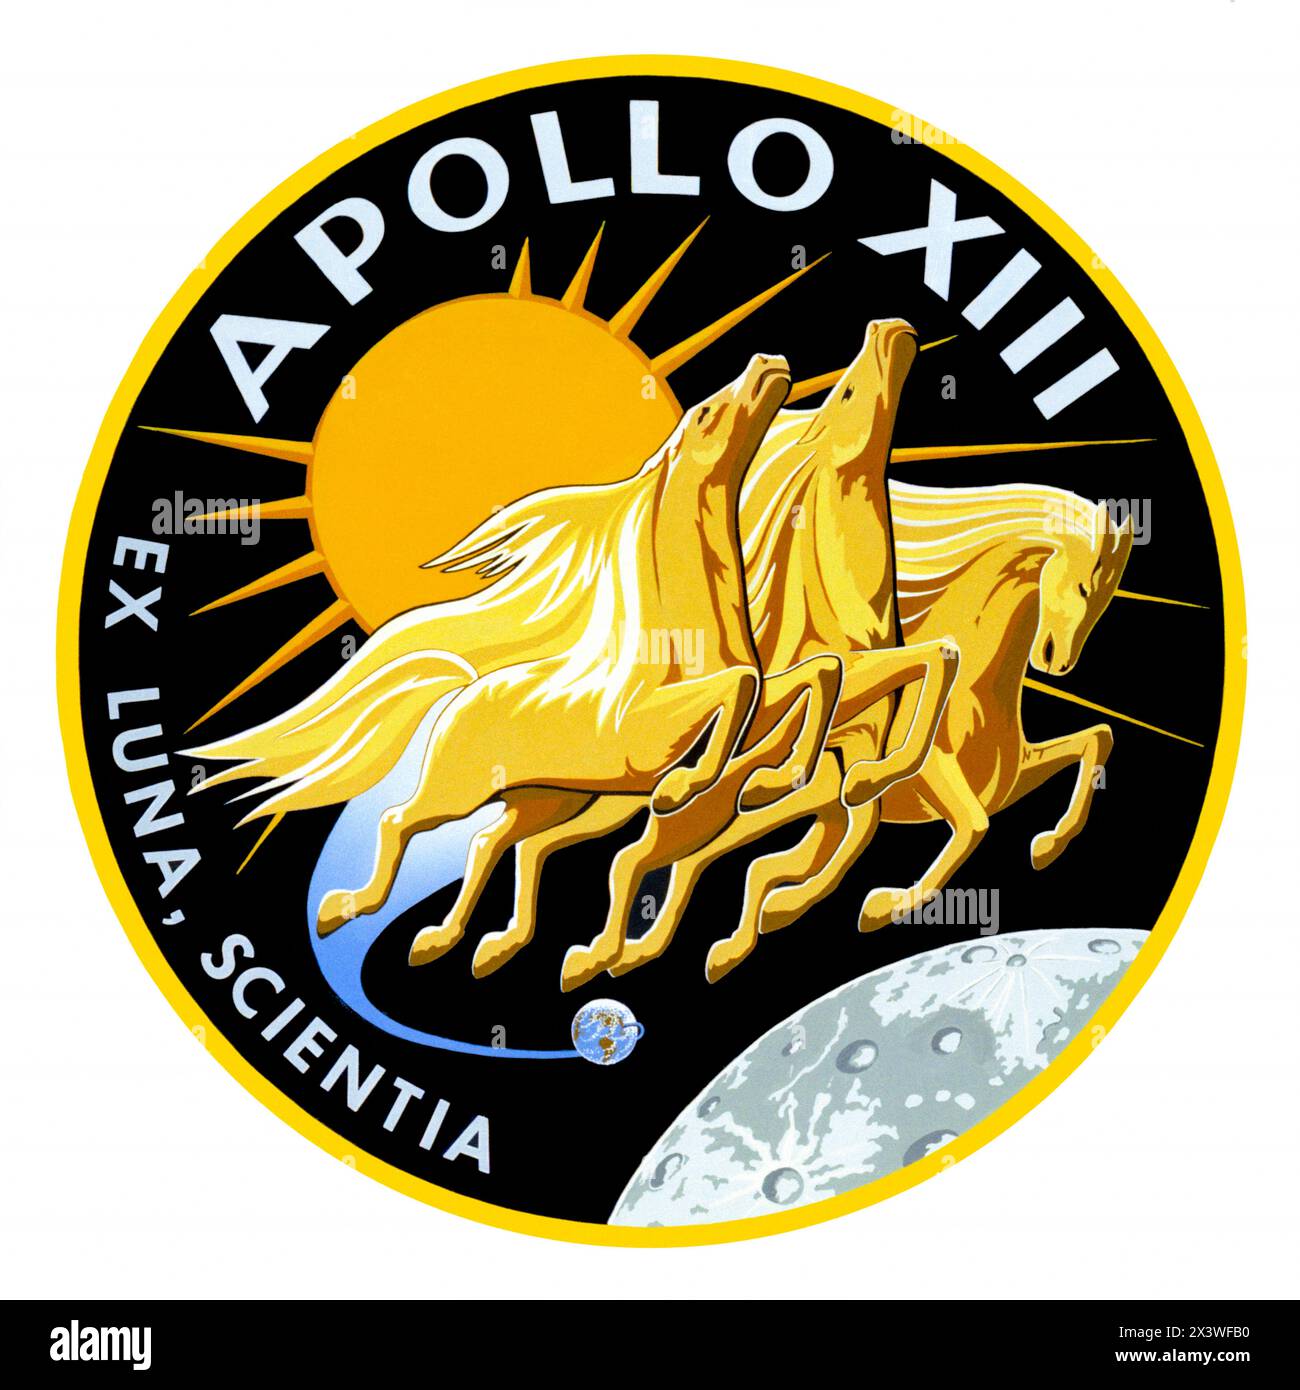 Apollo 13, missione di atterraggio lunare 1969 insegne che mostrano Apollo, il dio del sole della mitologia greca, e la frase latina “Ex Luna, Scientia” che significa “dalla Luna, conoscenza”. Foto Stock